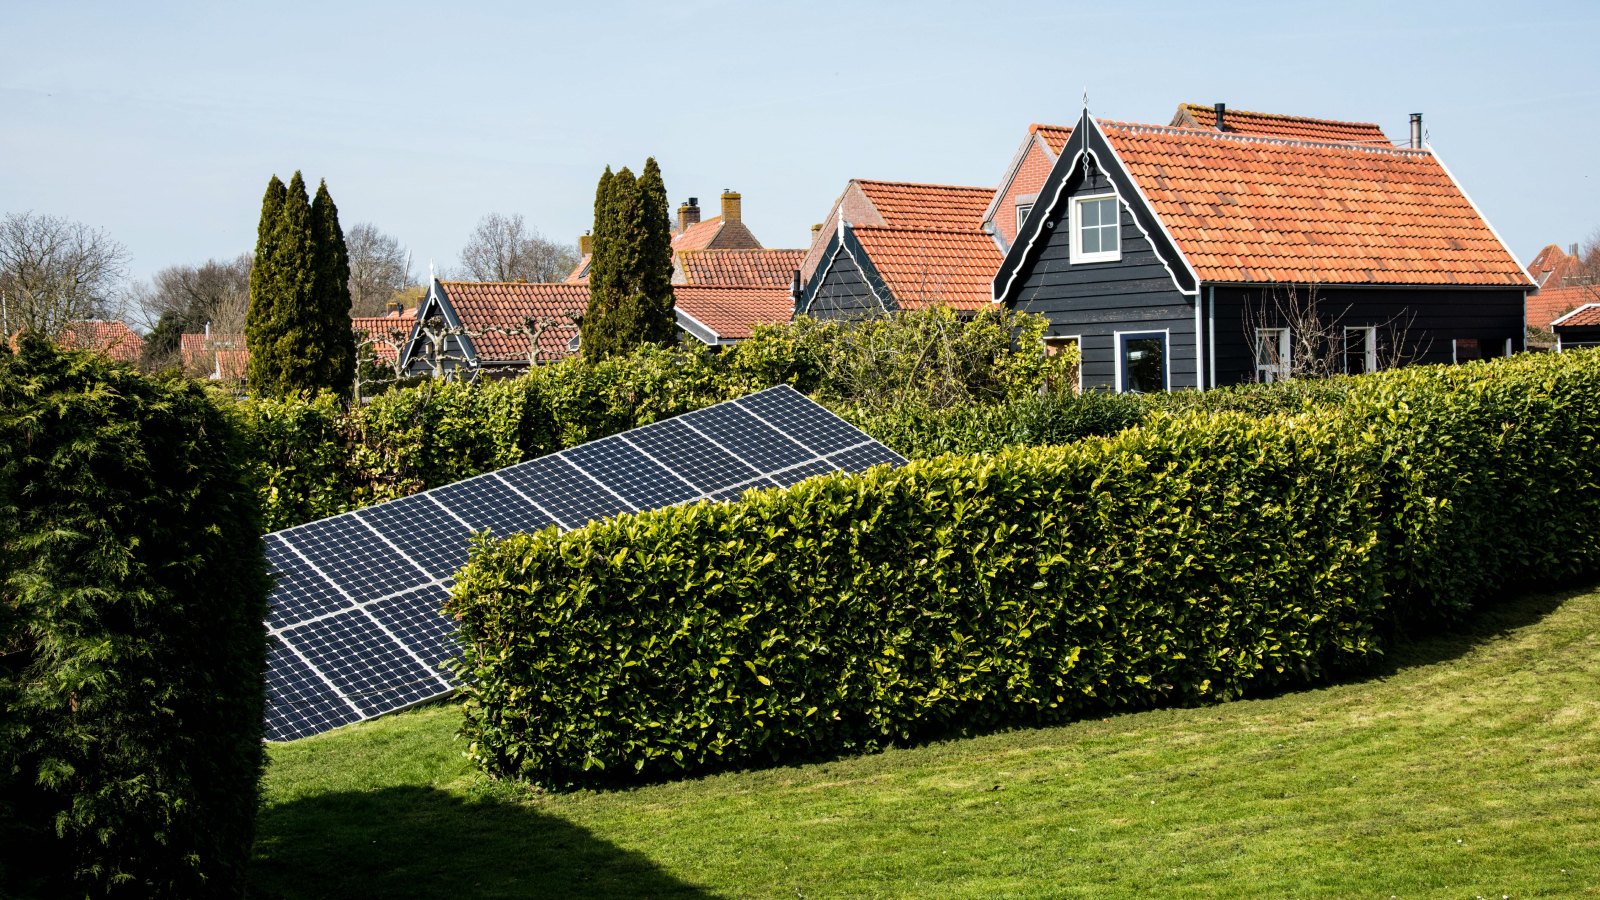 Solar panels in a neighborhood in Veere, Netherlands